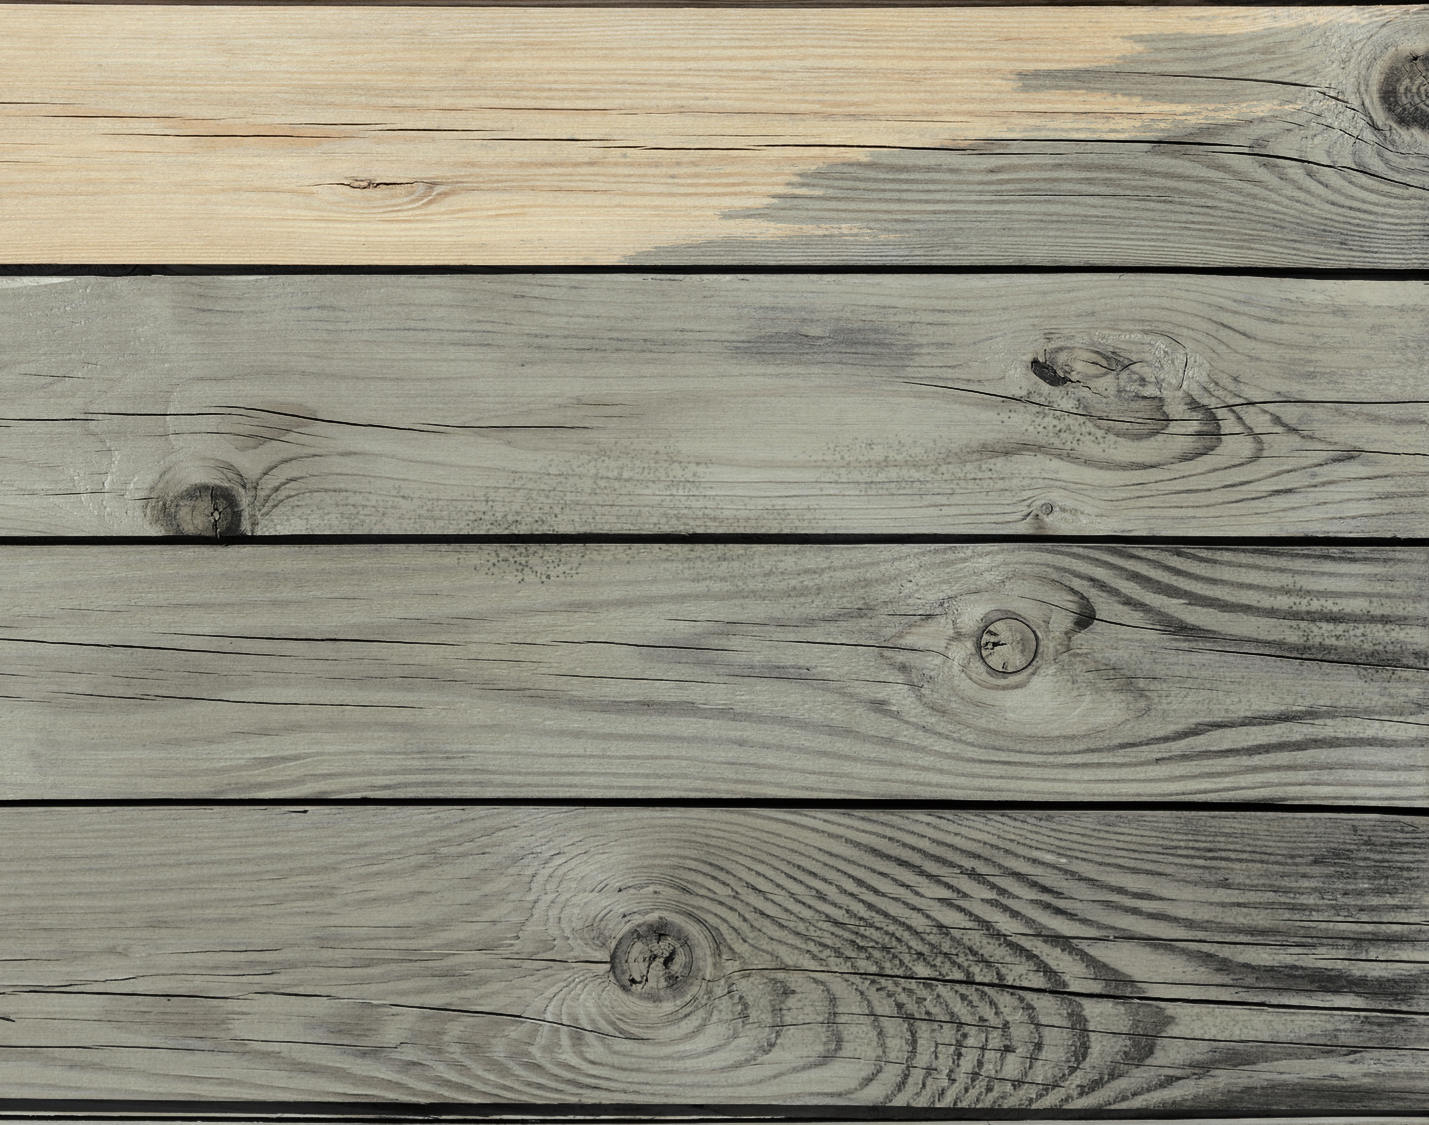 Saturer une terrasse en bois après grisaillement application dégriseur puis saturateur bois naturel 1919 by mauler